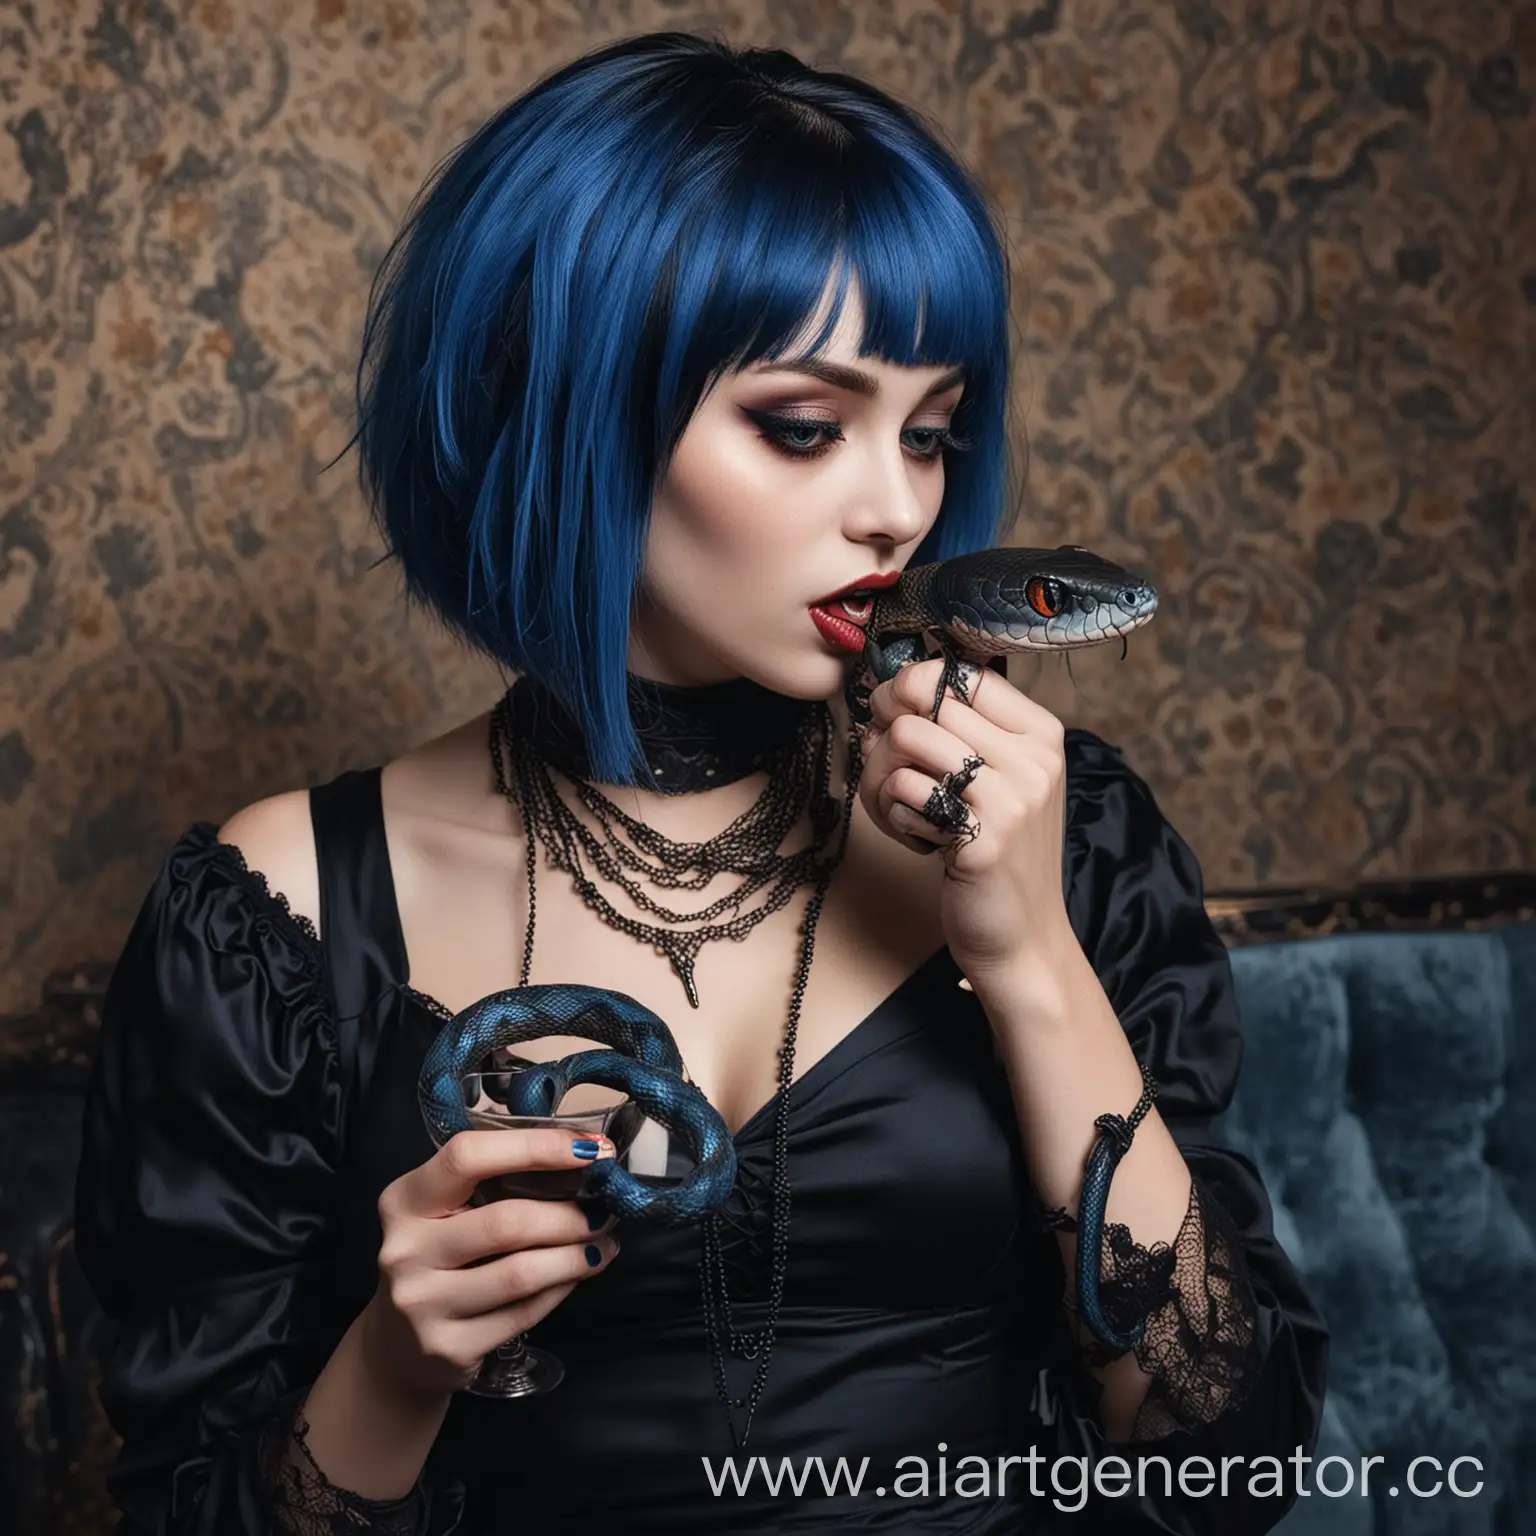 девушка вампир с прической боб синего цвета в черном платье с длинными рукавами, имеет домашнего питомца в виде змеи, любит выпить и внимание мужчин 